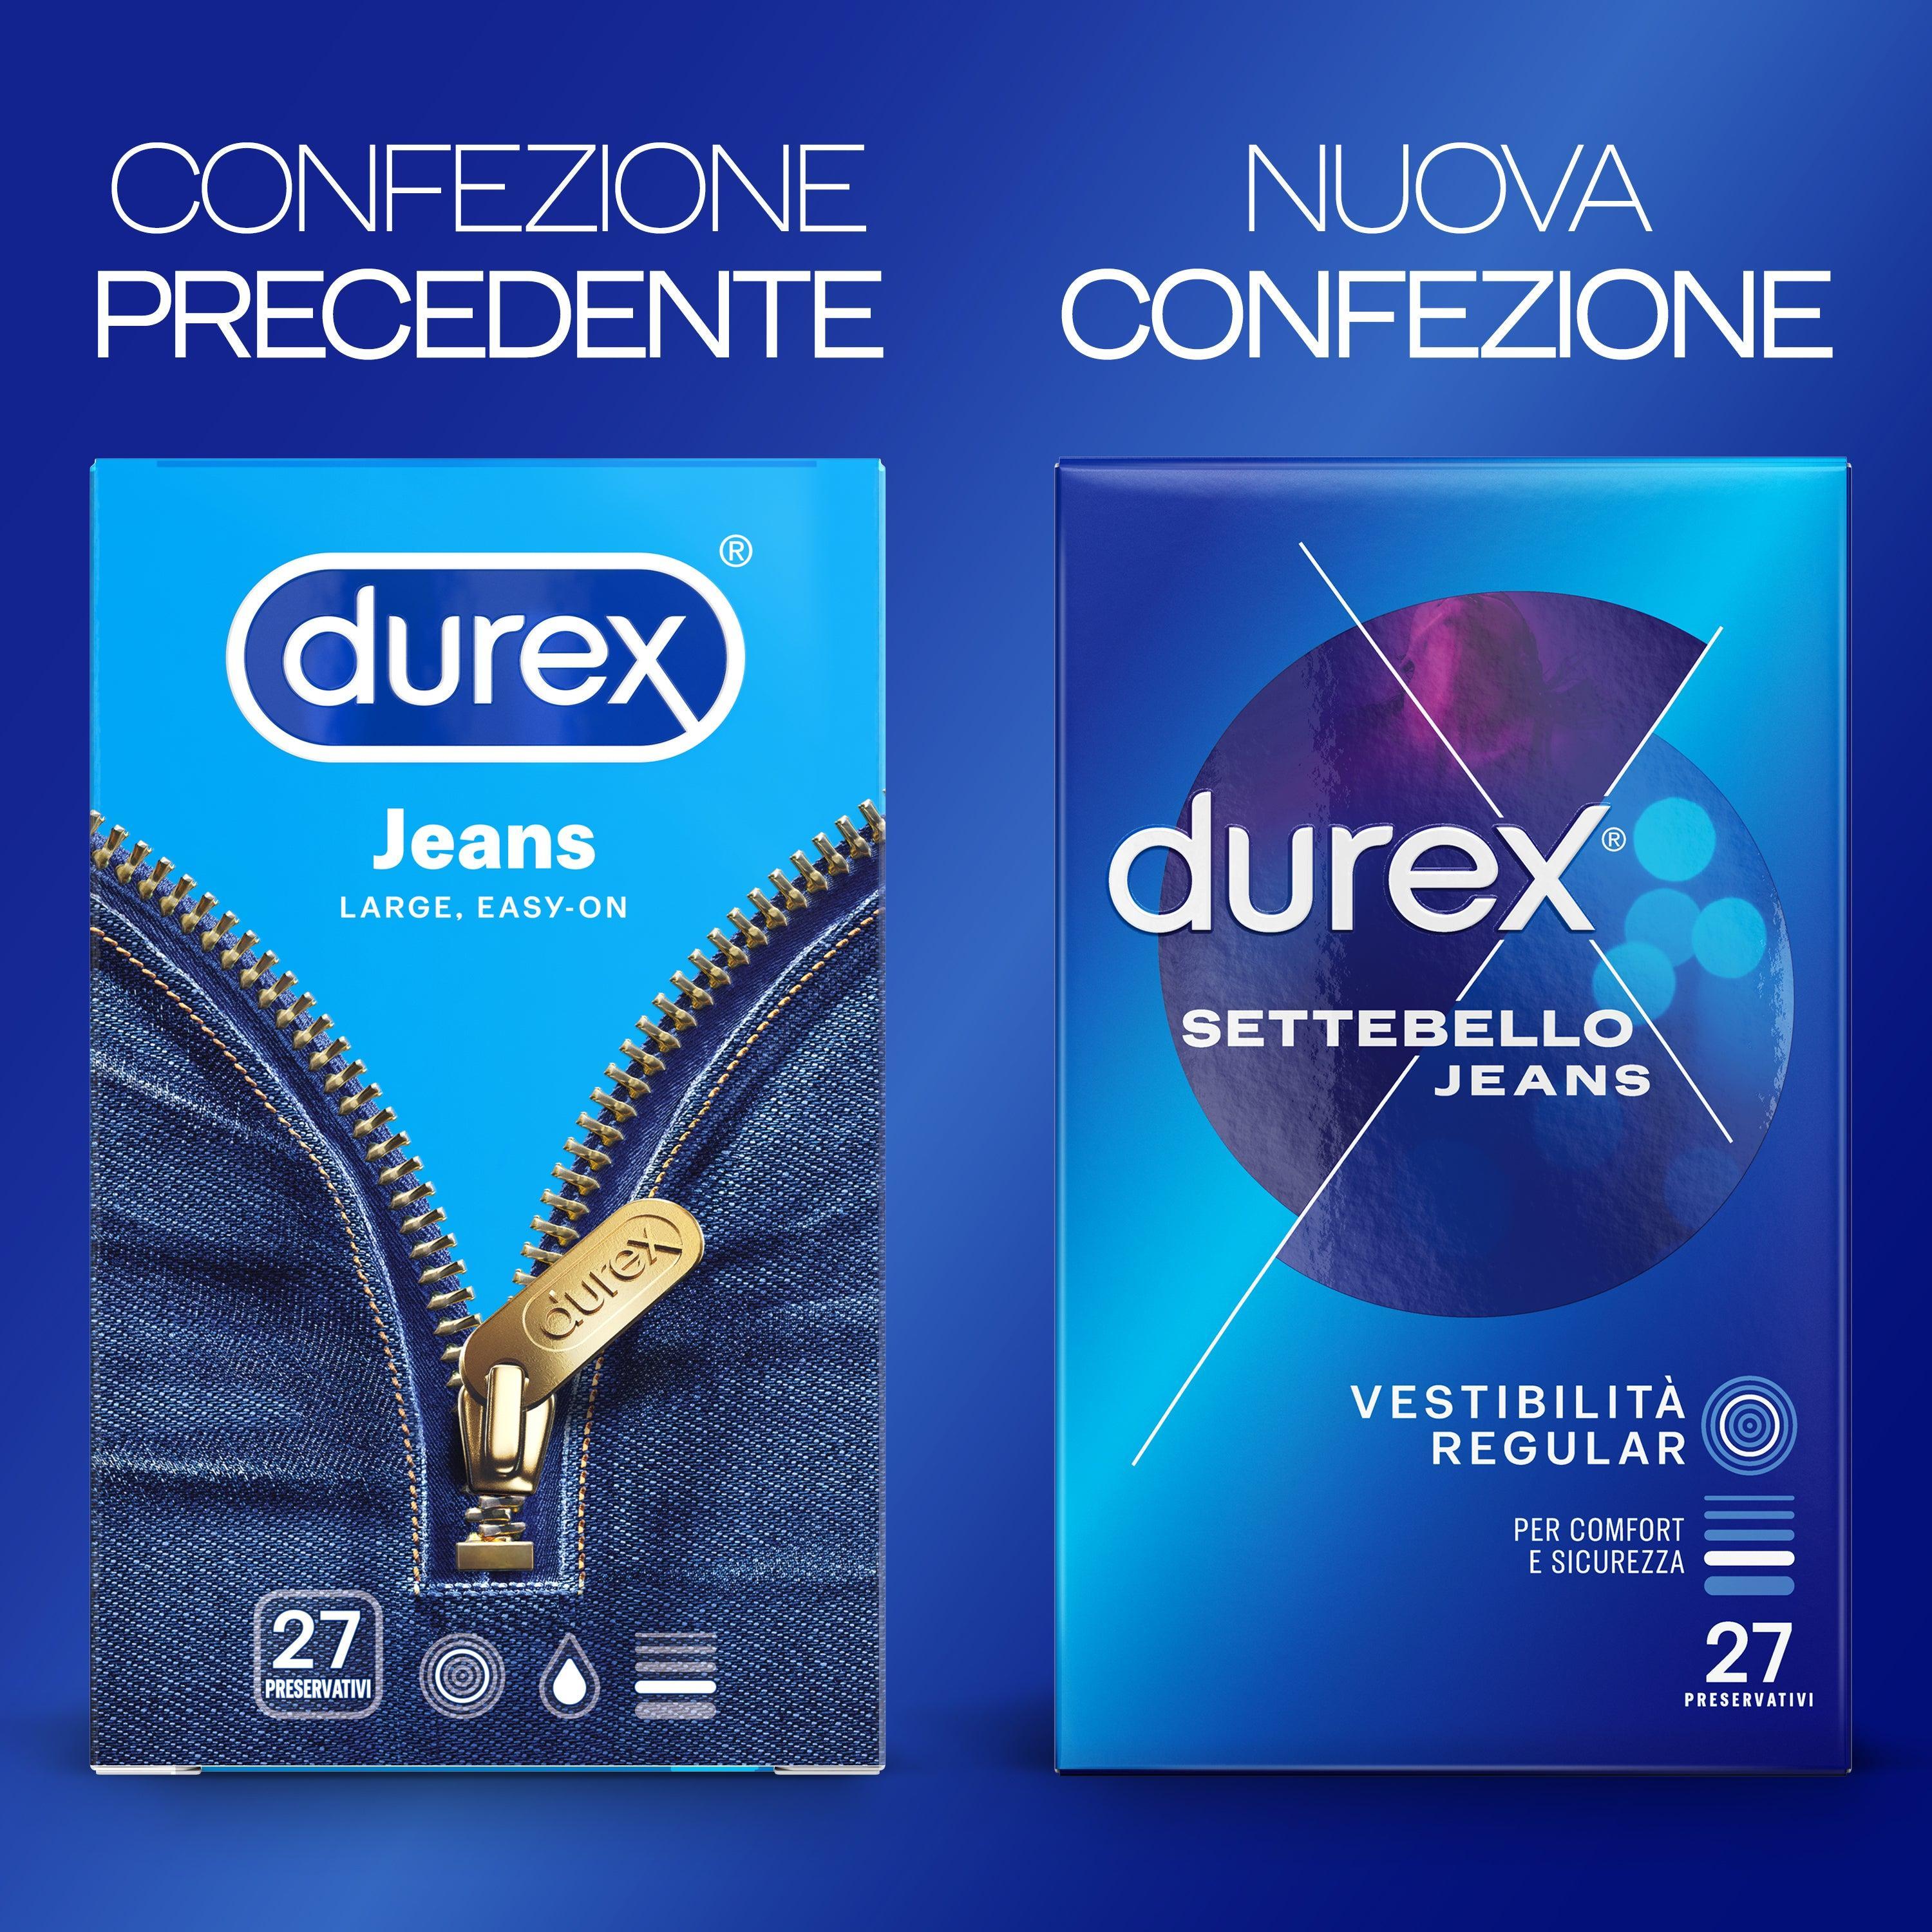 Preservativi Durex settebello jeans confezione da 6